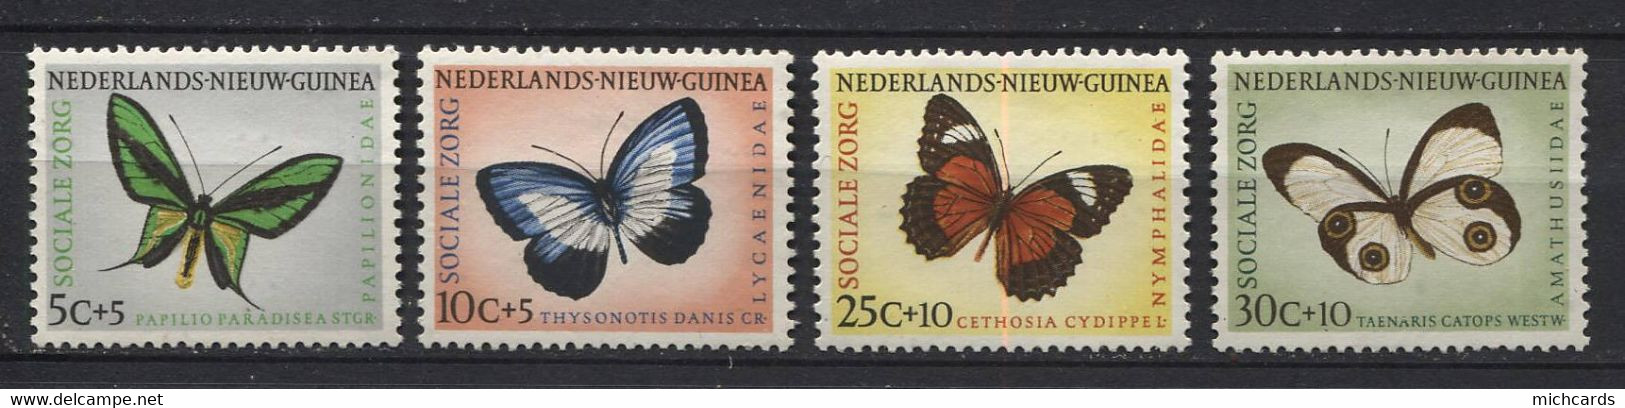 180 NOUVELLE GUINEE NEERLANDAISE 1960 - Y&T 58/61 - Papillon - Oiseau - Neuf ** (MNH) Sans Charniere - Nederlands Nieuw-Guinea